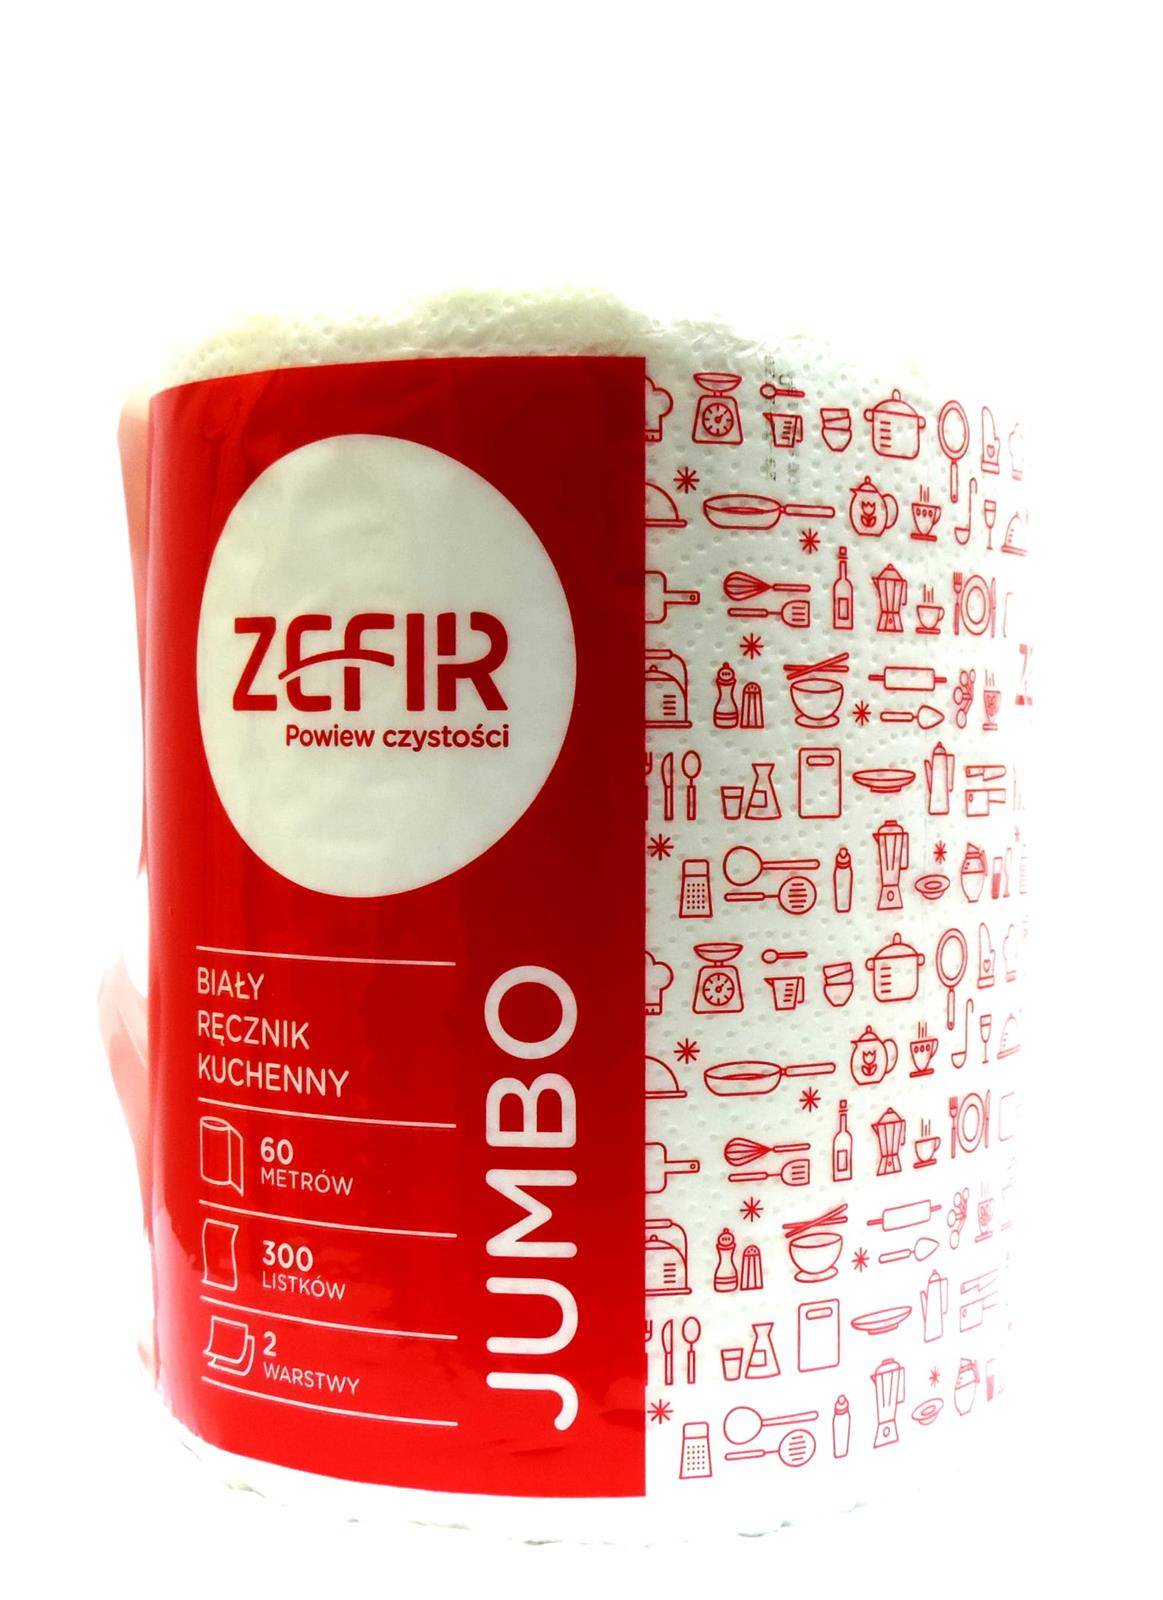 Ręcznik ZEFIR 100% celuloza, 2 w. 60m.